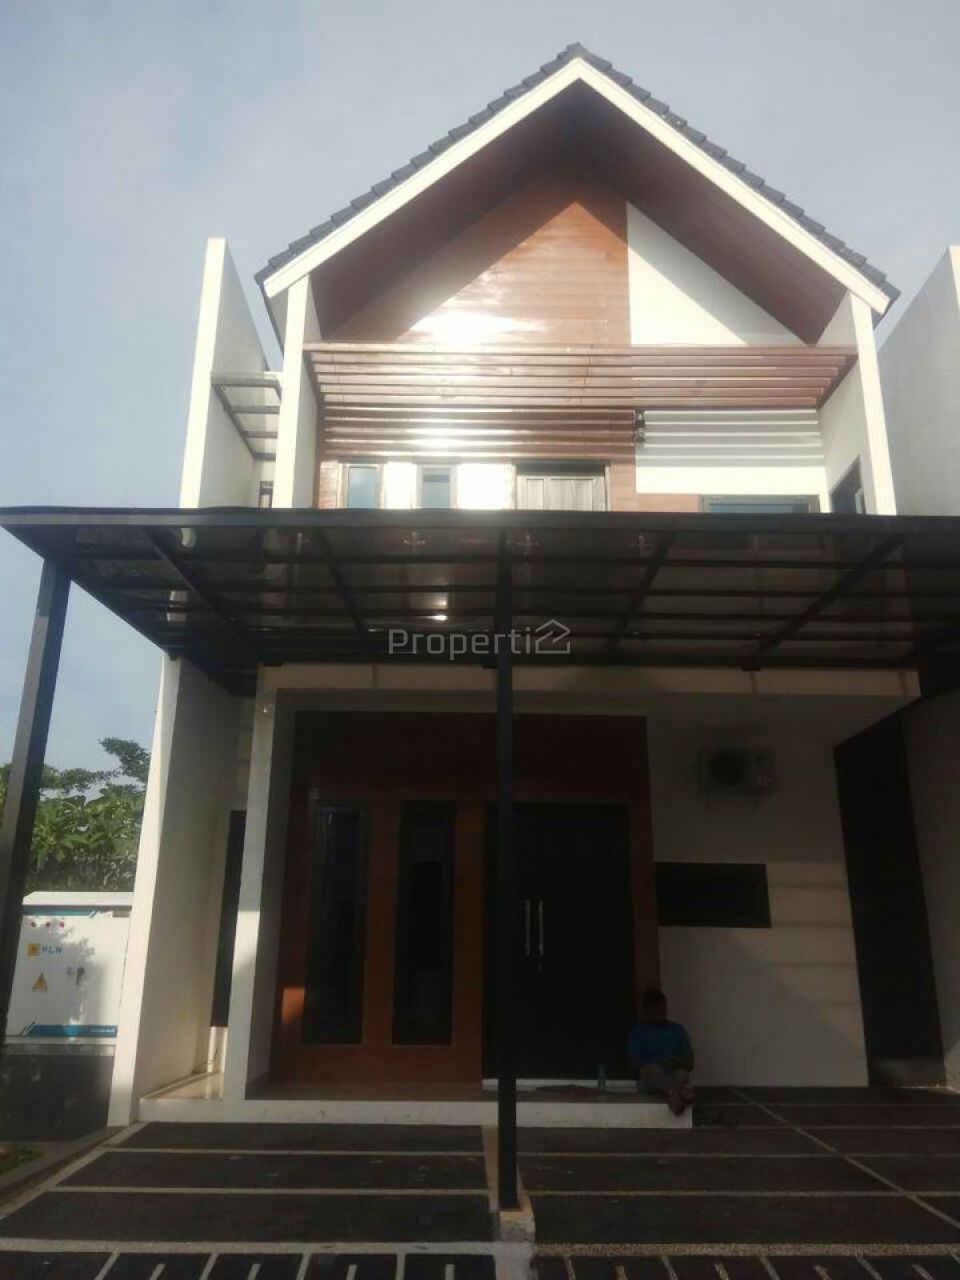 New Townhouse in Jatiwaringin, Bekasi City, Jawa Barat